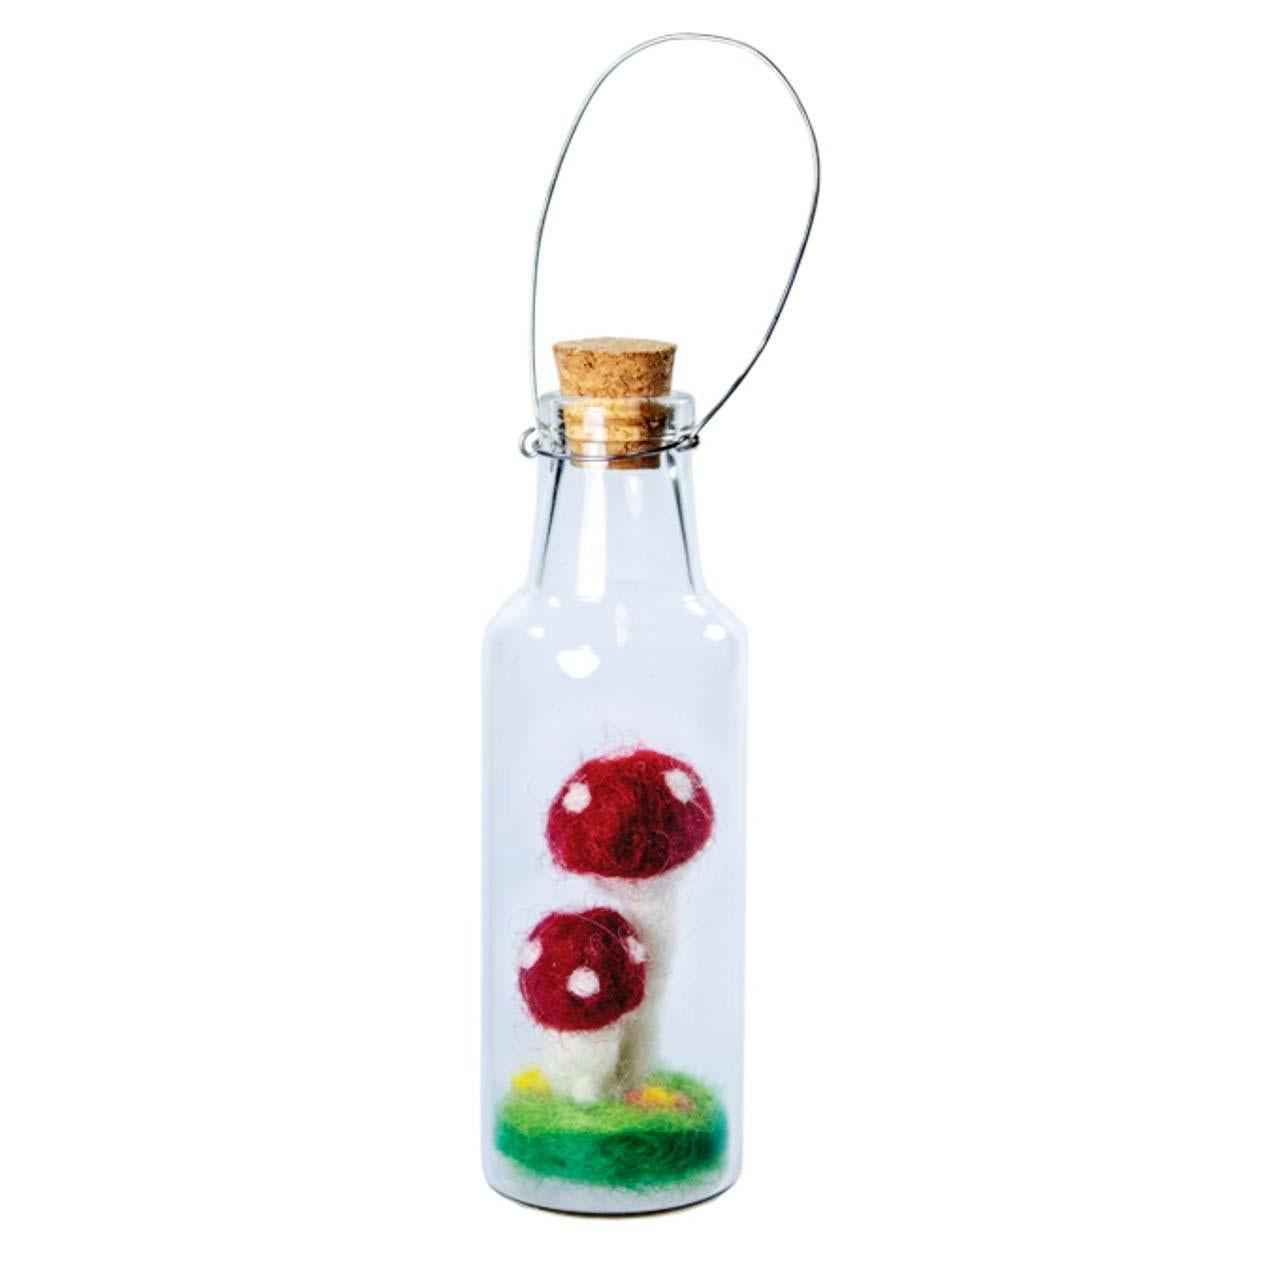 Double Fairy Mushroom Bottle Ornament: Whimsical Handmade Decor